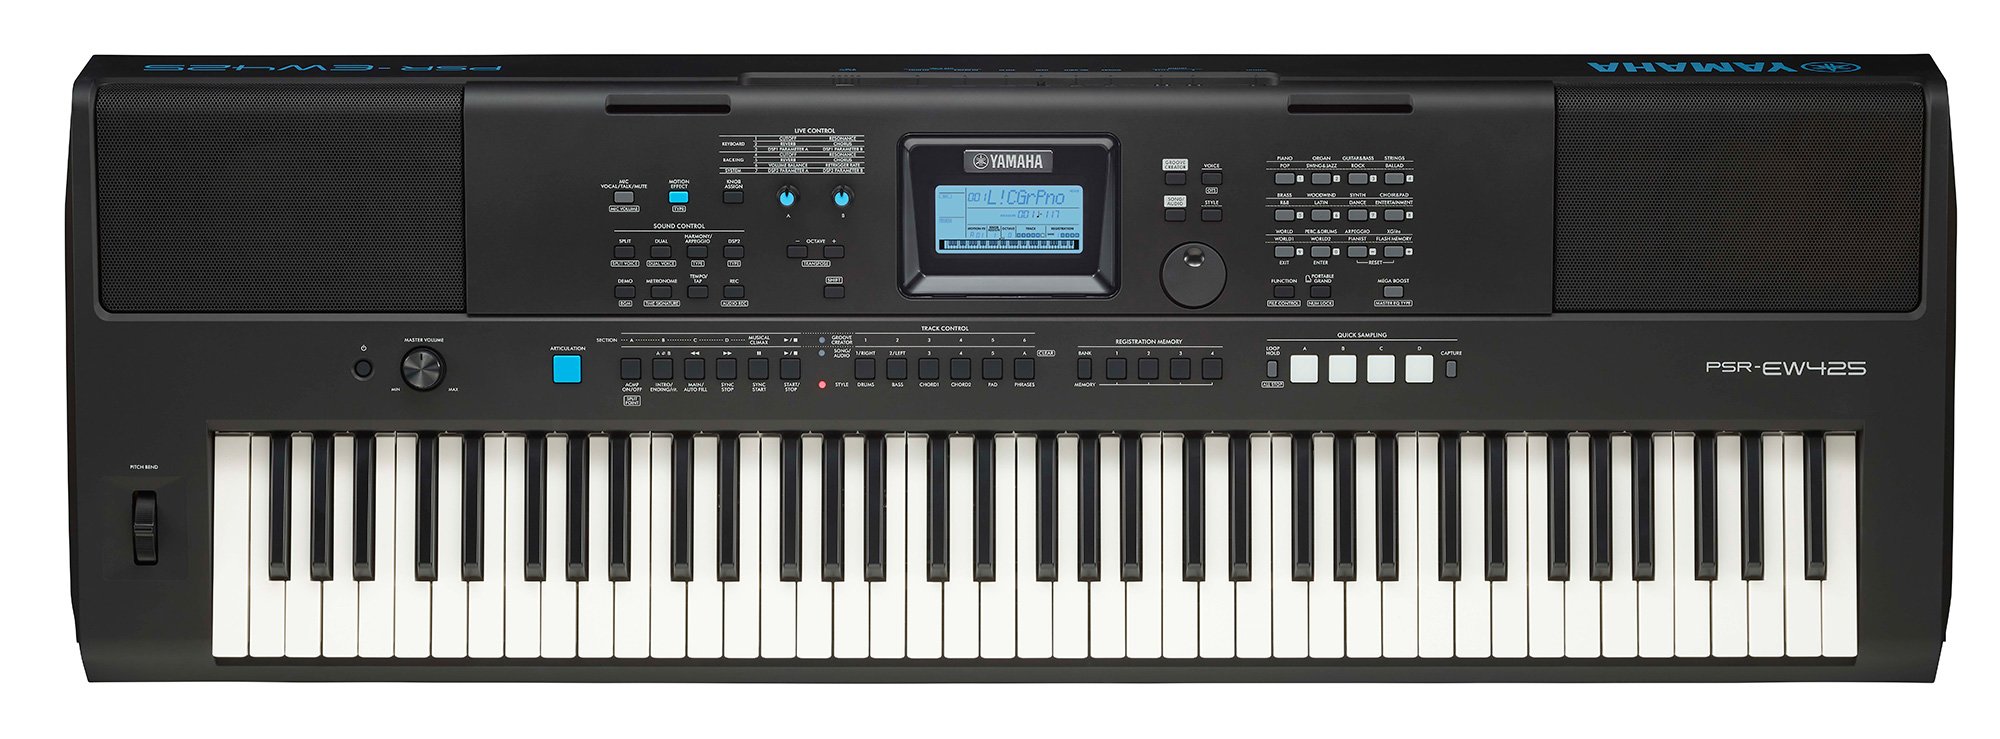 Billede af Yamaha PSR-EW425 Keyboard (Sort)